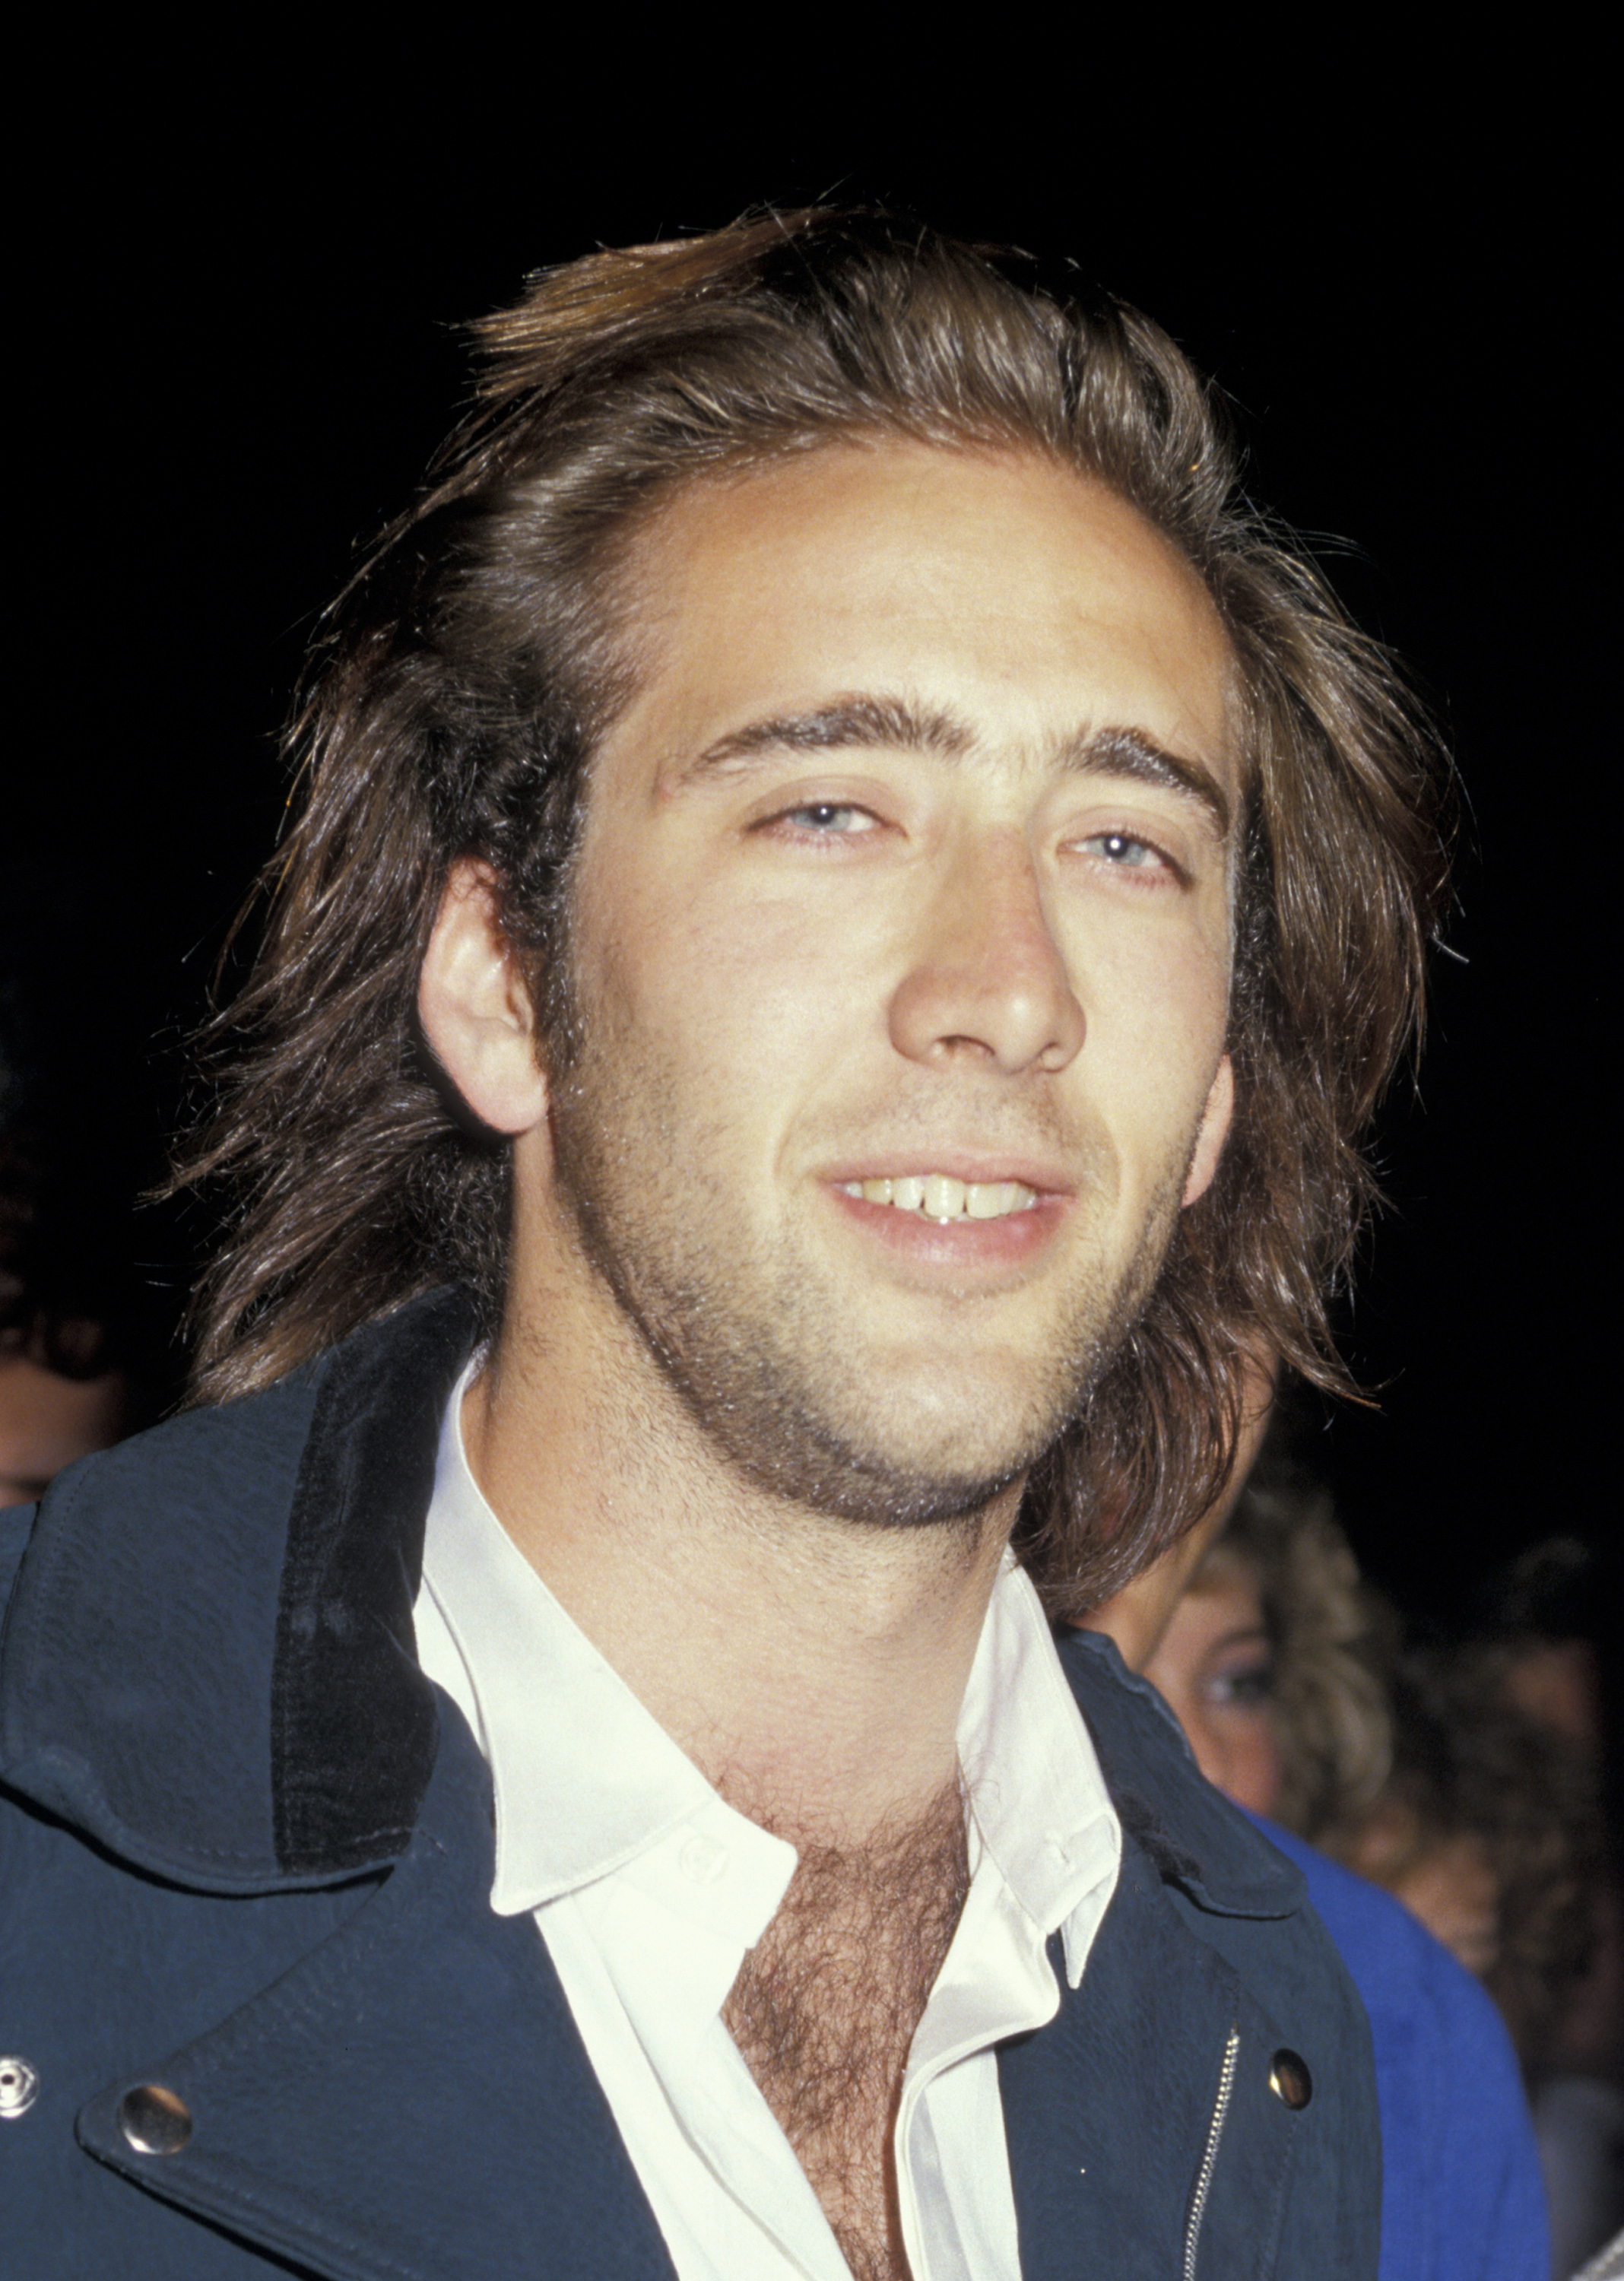 Nicolas Cage en el estreno de "Dragnet" el 23 de junio de 1987. | Fuente: Getty Images